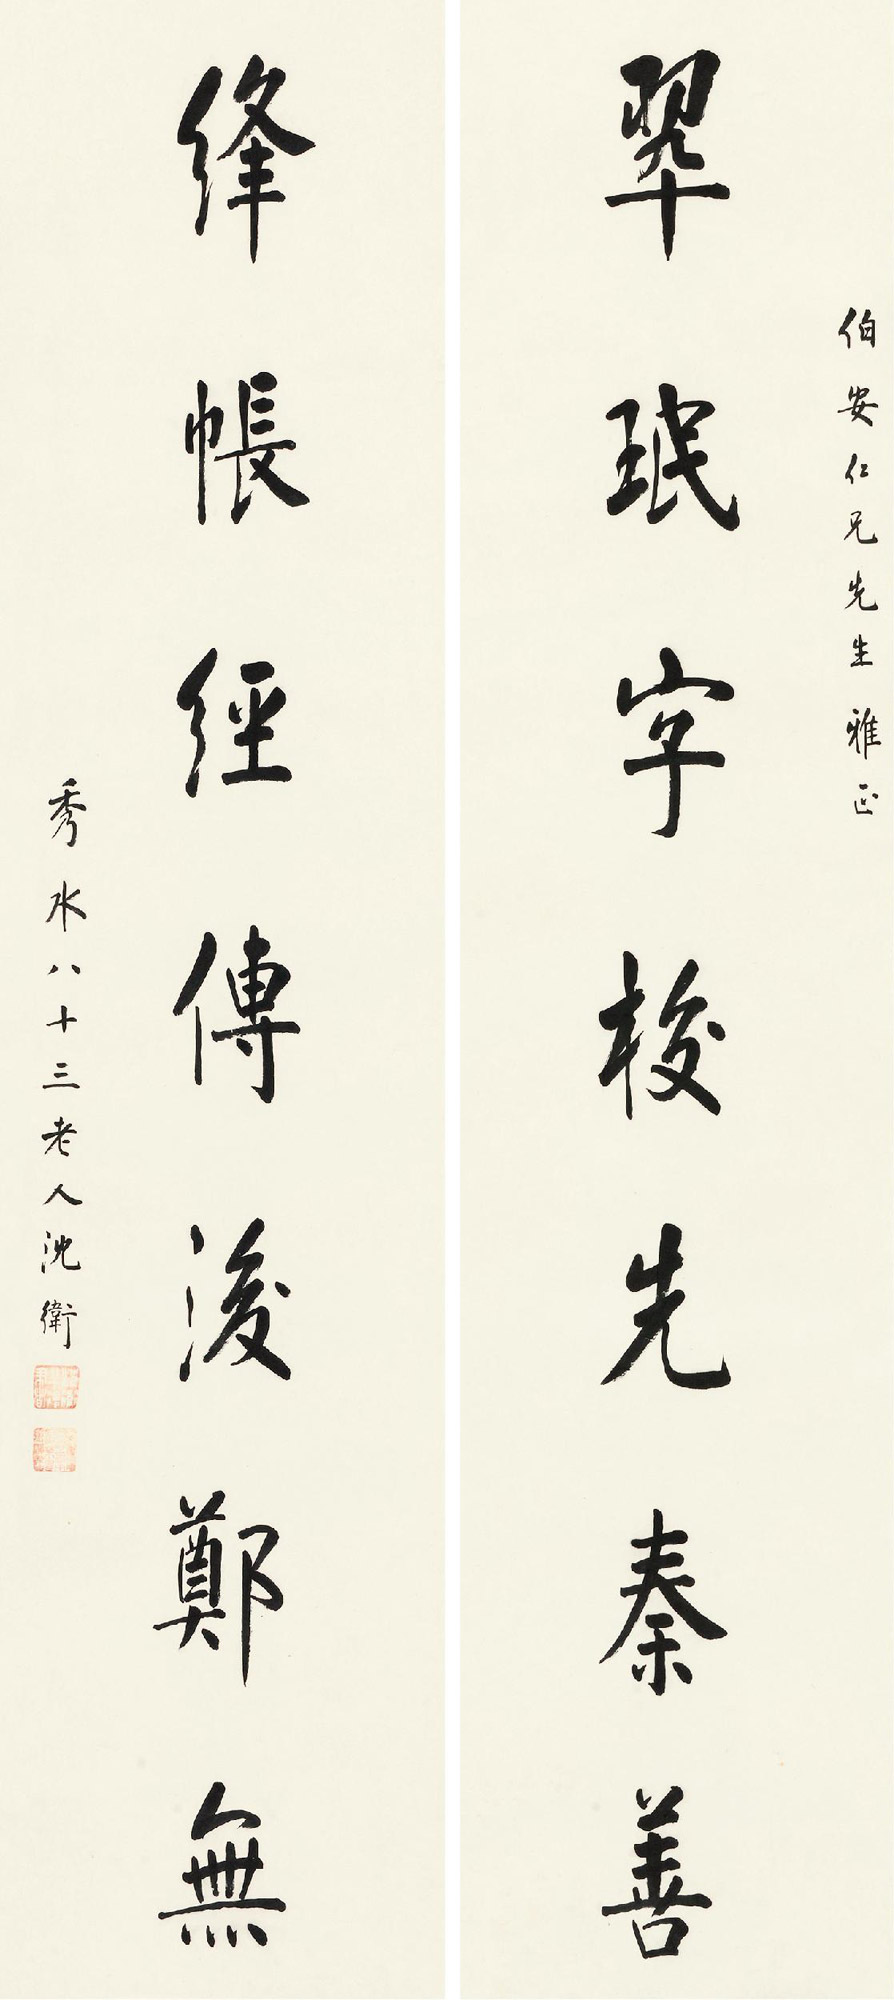 沈卫 (1862～1945)拍品分类中国书画